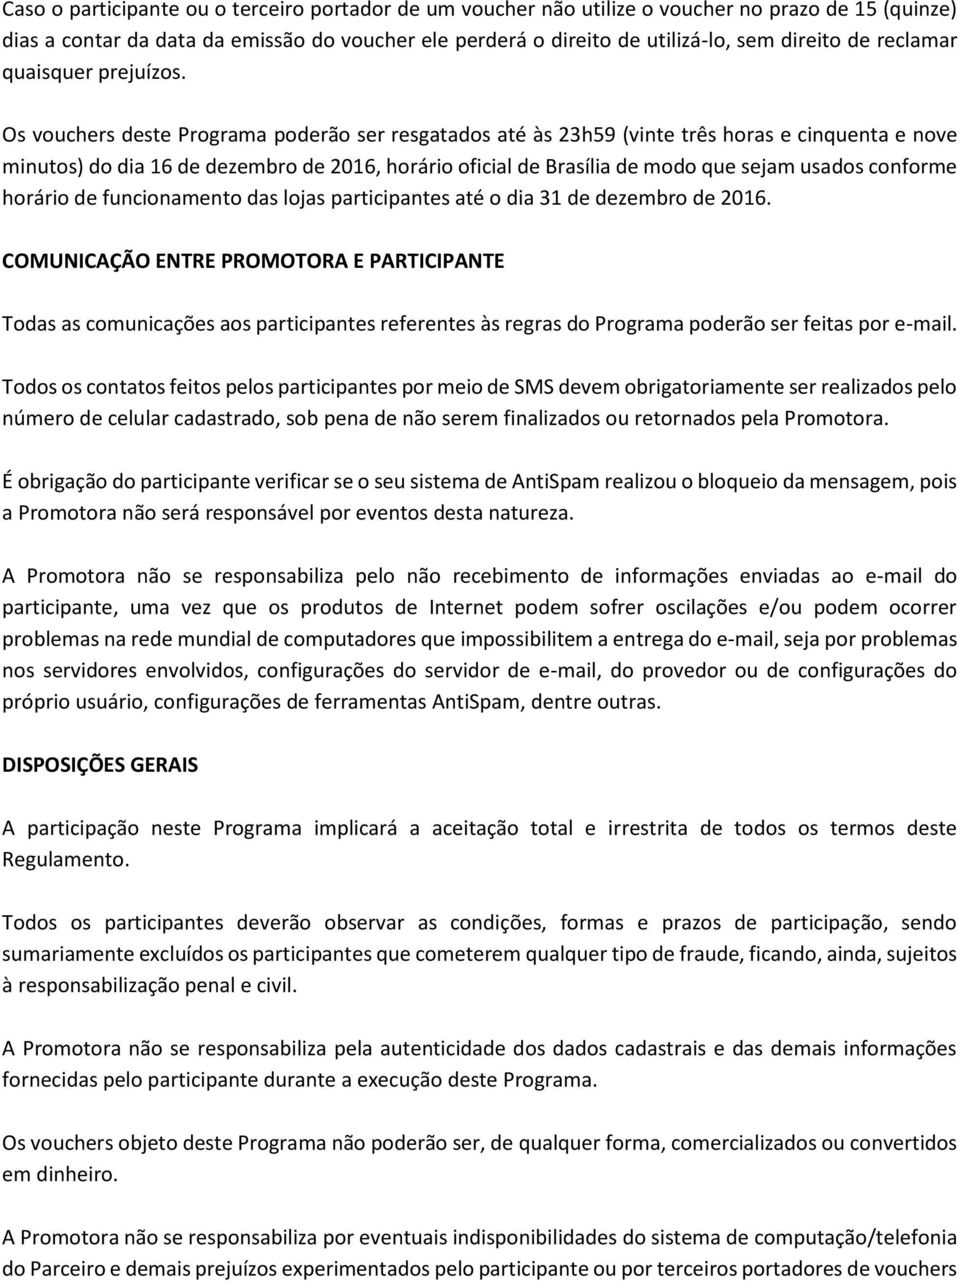 Os vouchers deste Programa poderão ser resgatados até às 23h59 (vinte três horas e cinquenta e nove minutos) do dia 16 de dezembro de 2016, horário oficial de Brasília de modo que sejam usados